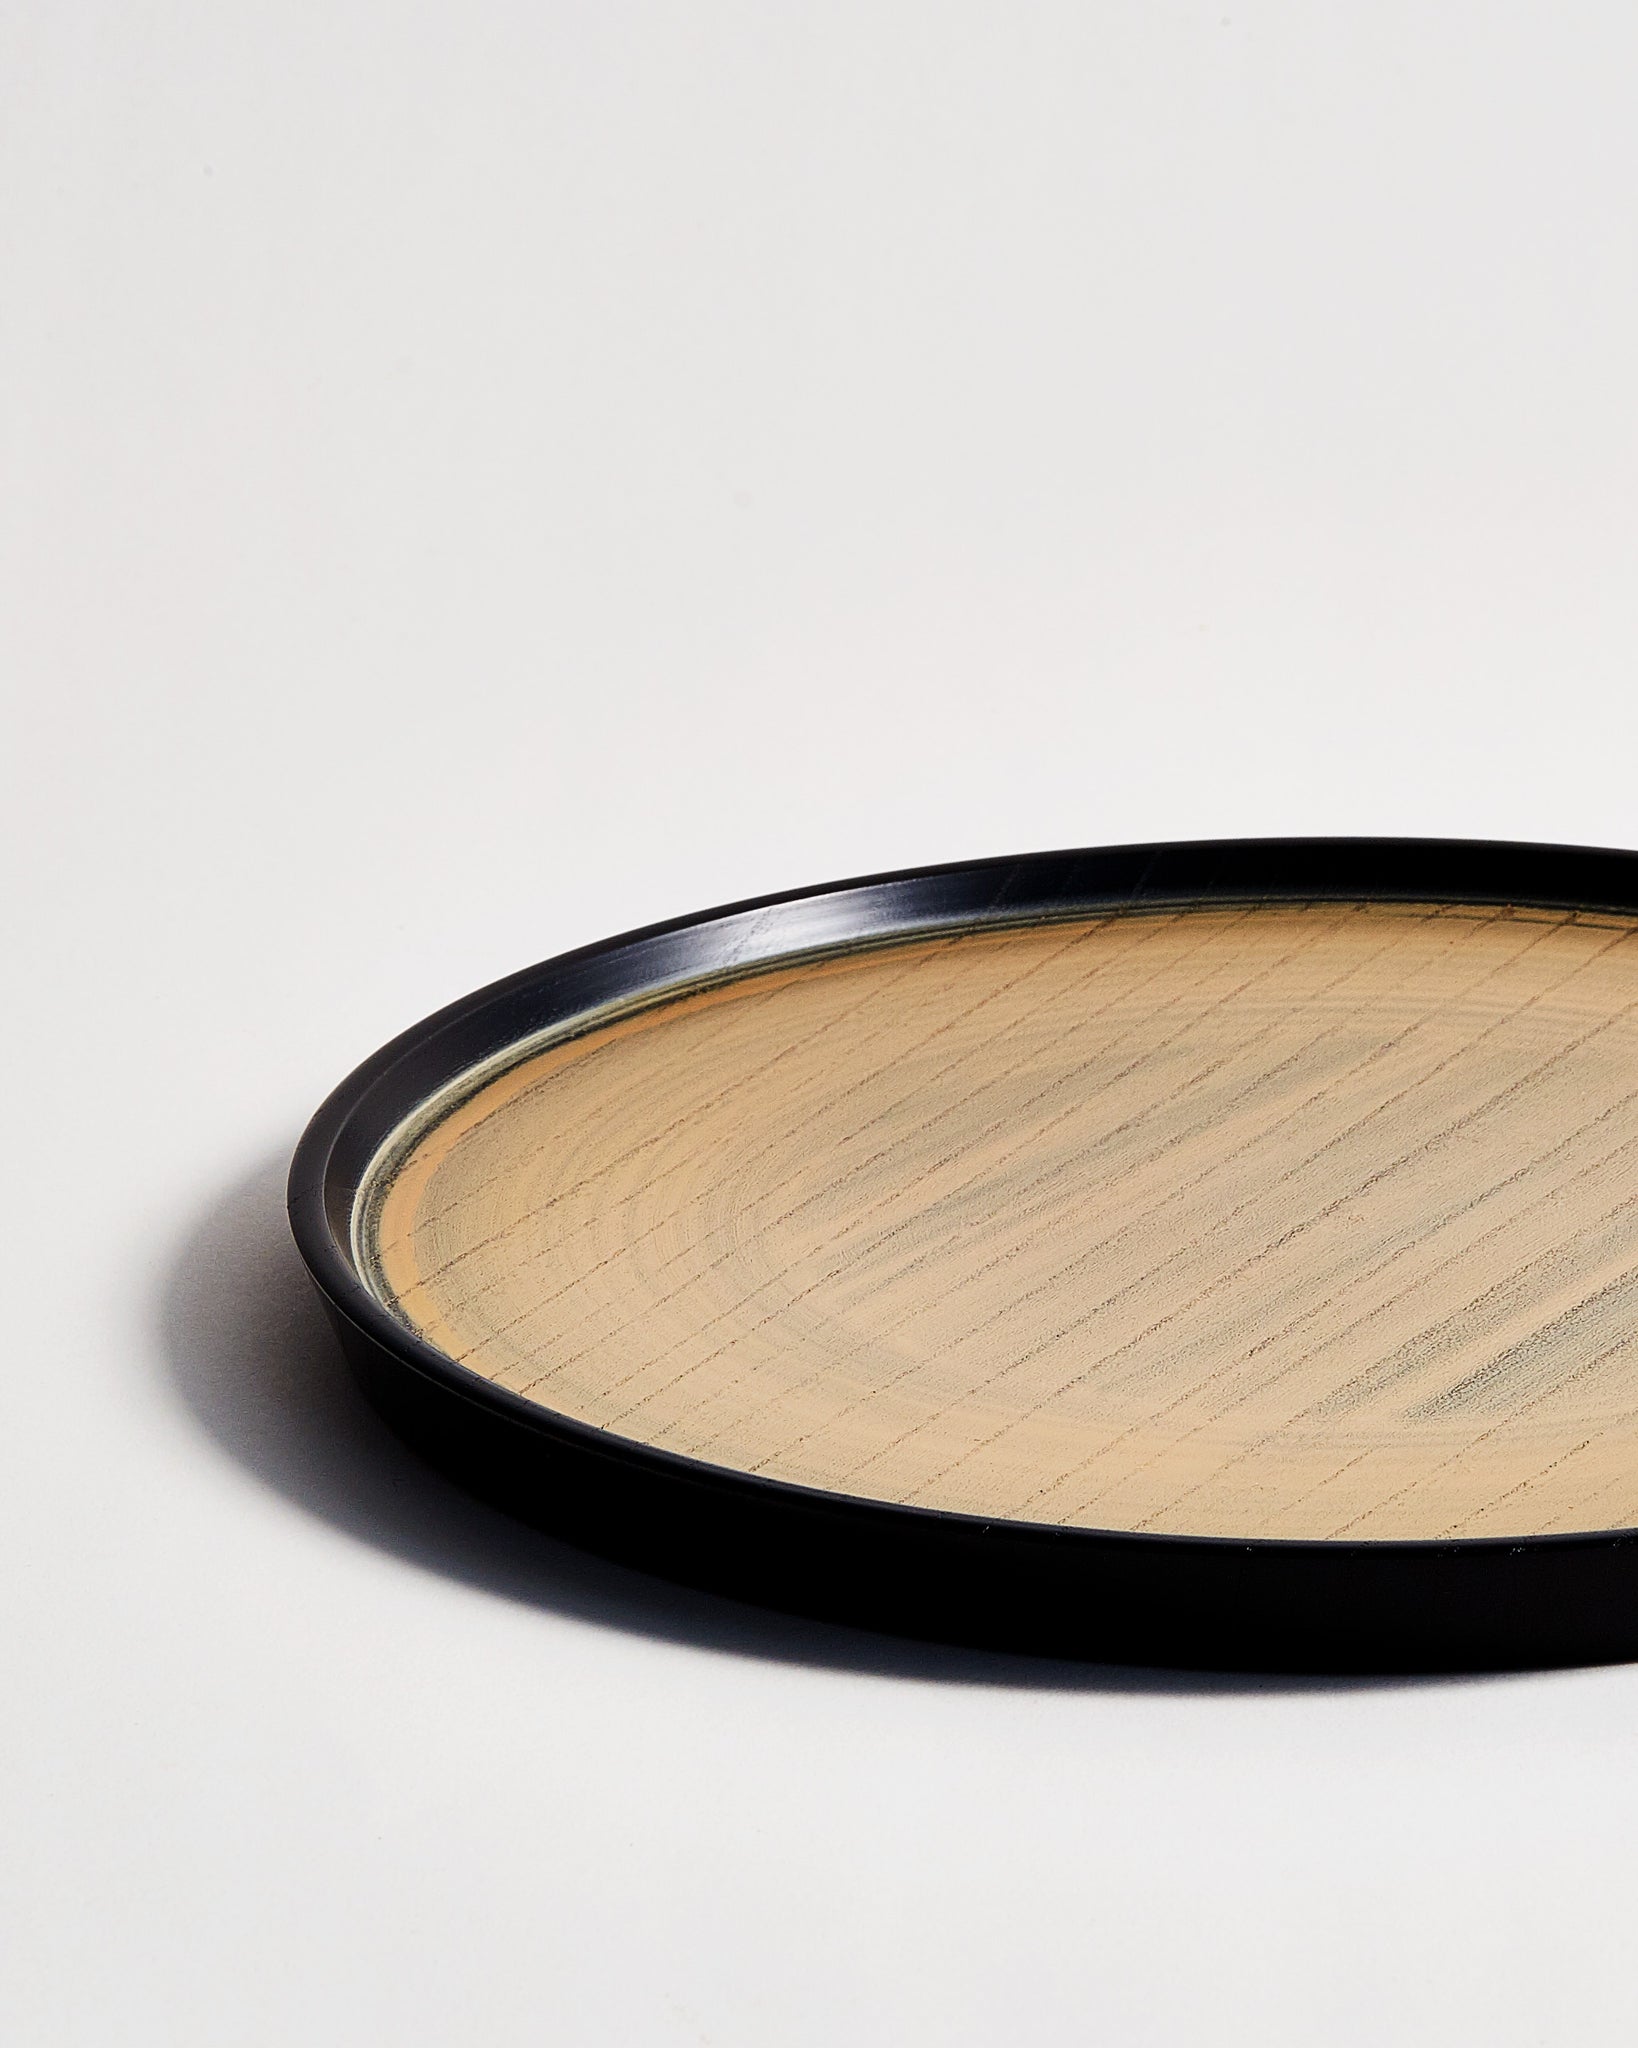 Cropped close-up image of Usuzumi Round Oak Tray by Ryuji Mitani against white-gray background. 